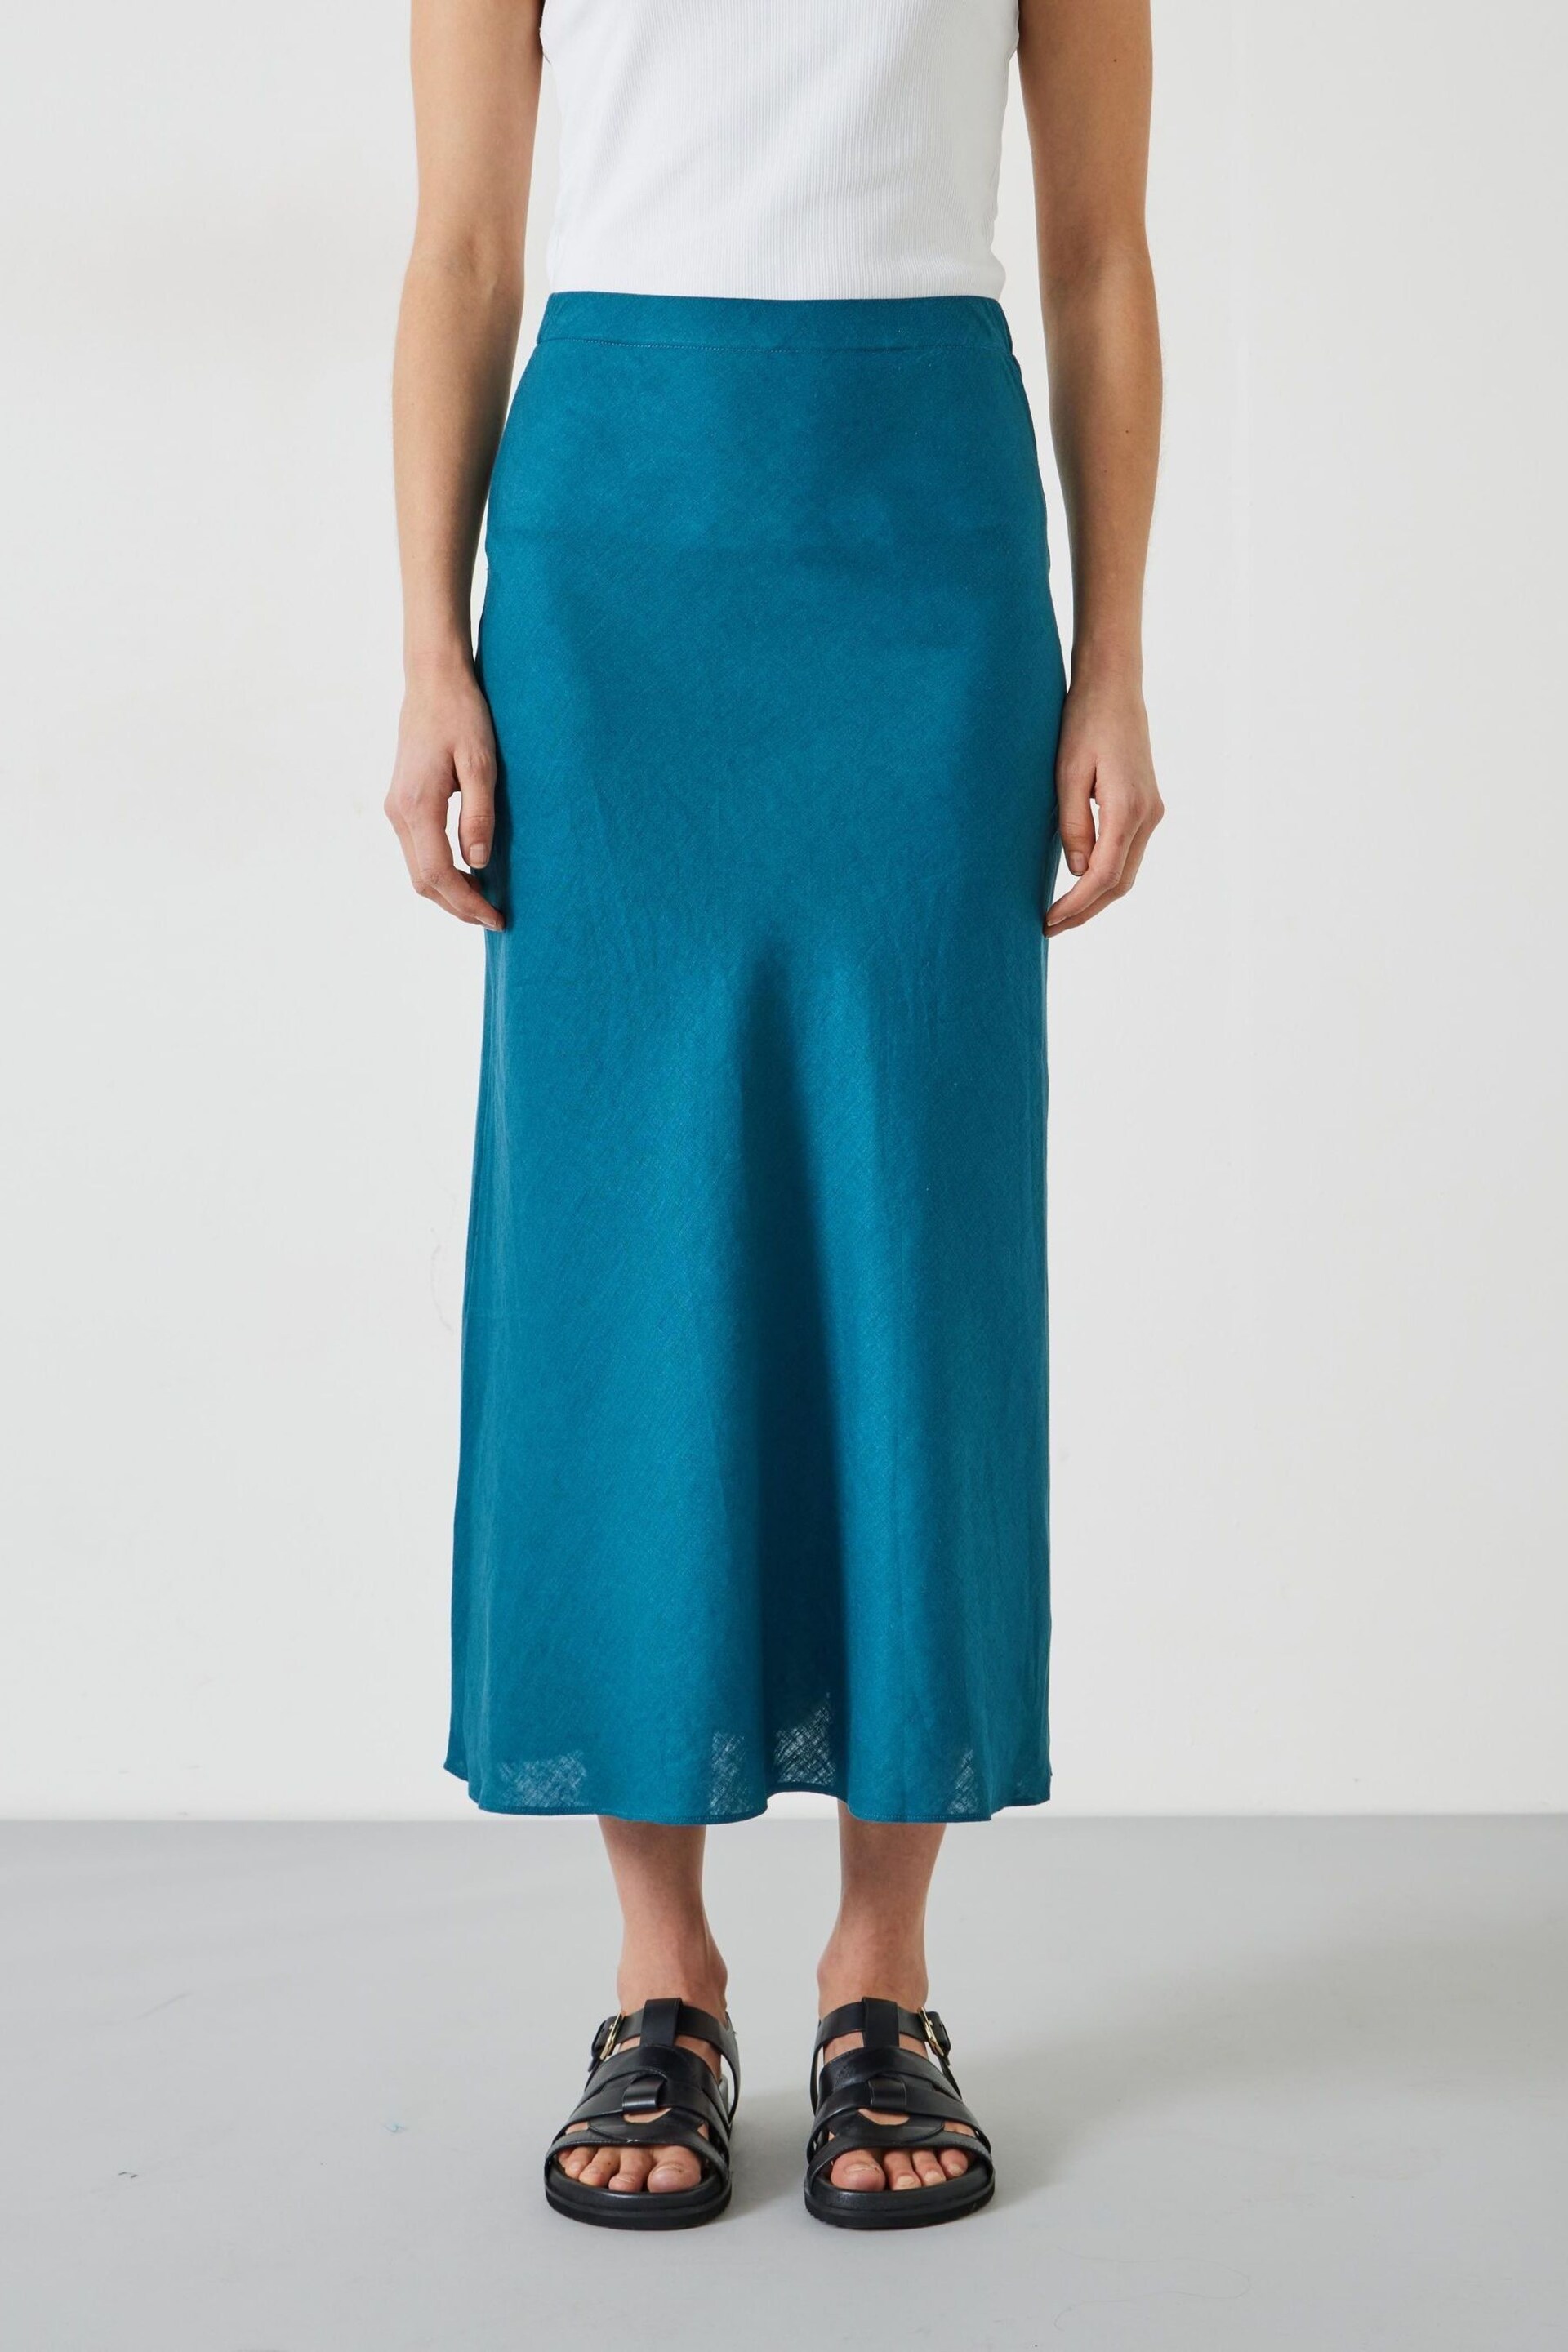 Hush Blue Simone Linen Midi Skirt - Image 2 of 5